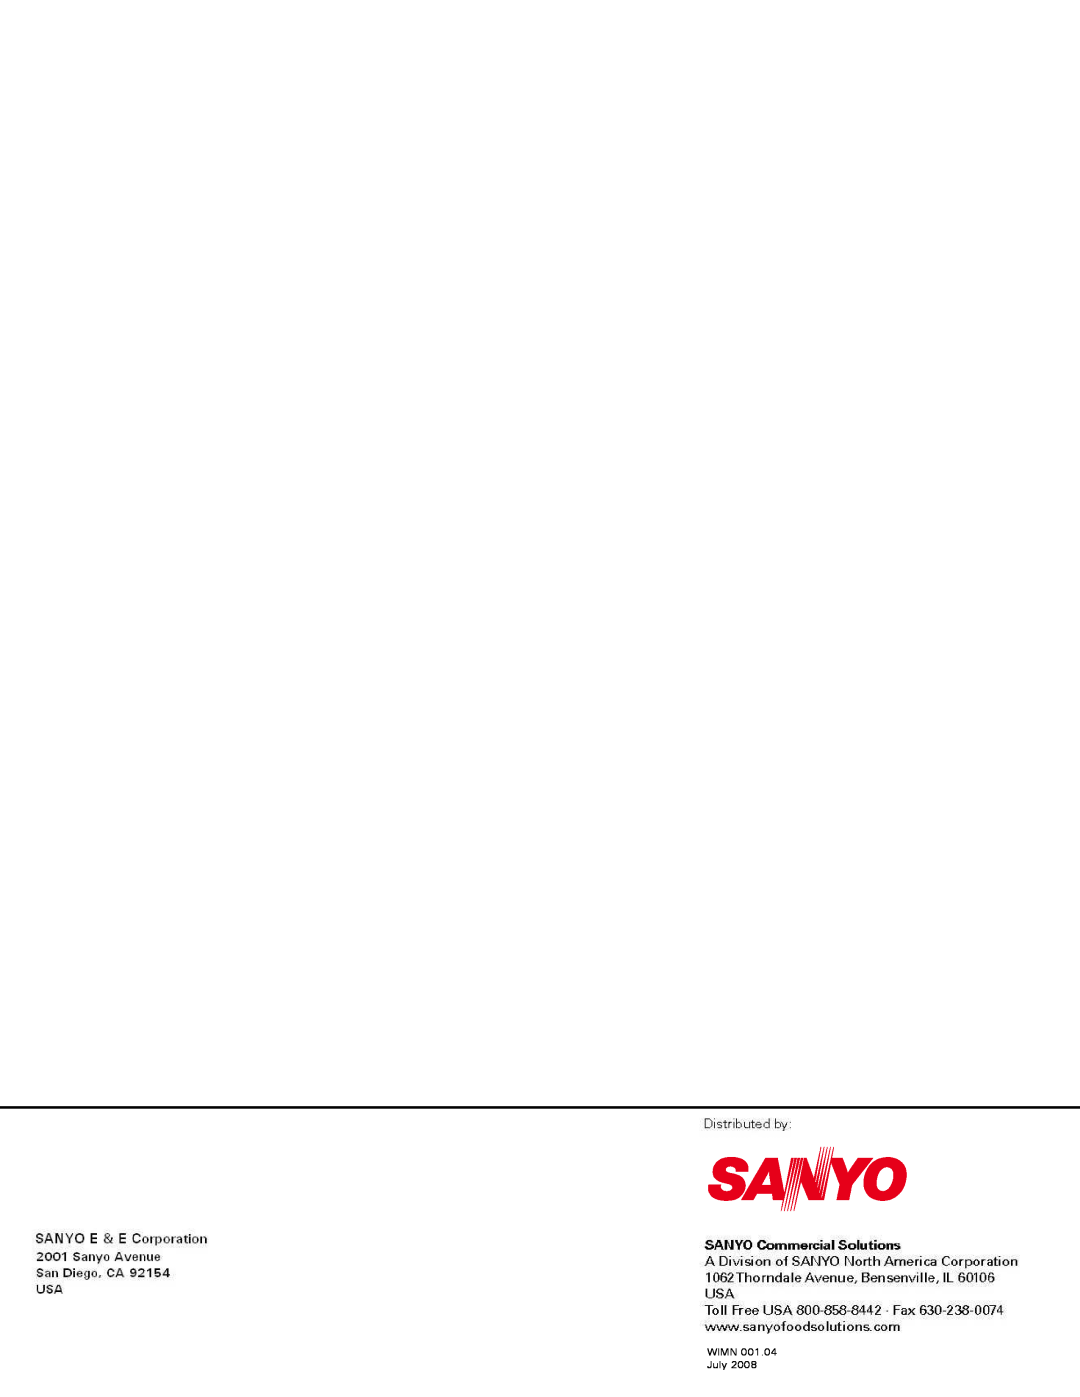 Sanyo TVQ-EXA029K. TVQ-EXACK, TVQ-EXA089K service manual WIMN 001.04 July 